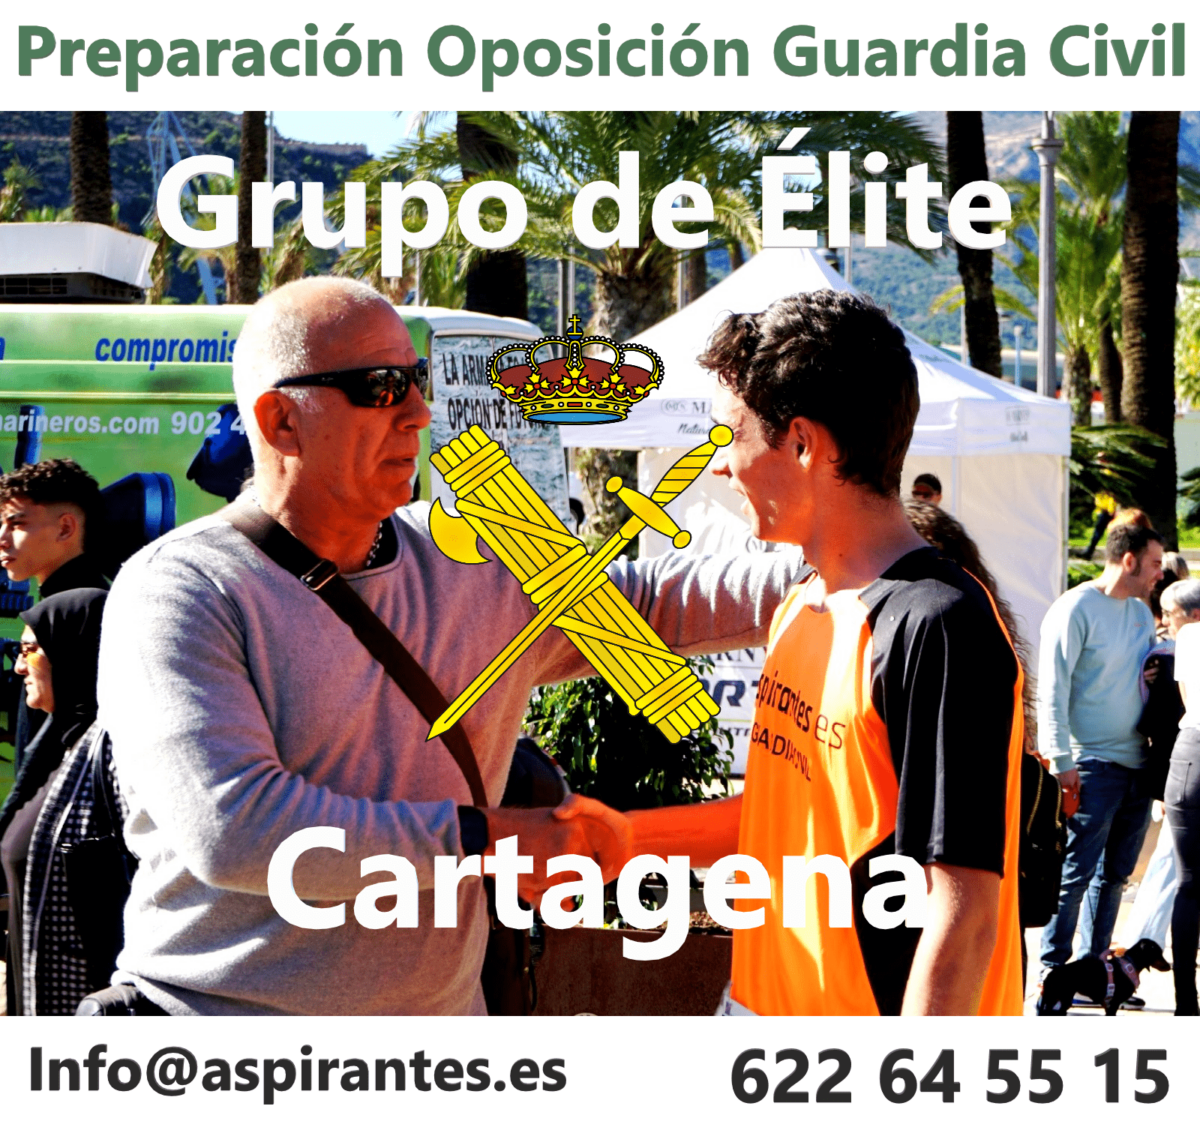 RC Oposiciones IPA oposiciones Level 112 Cartagena